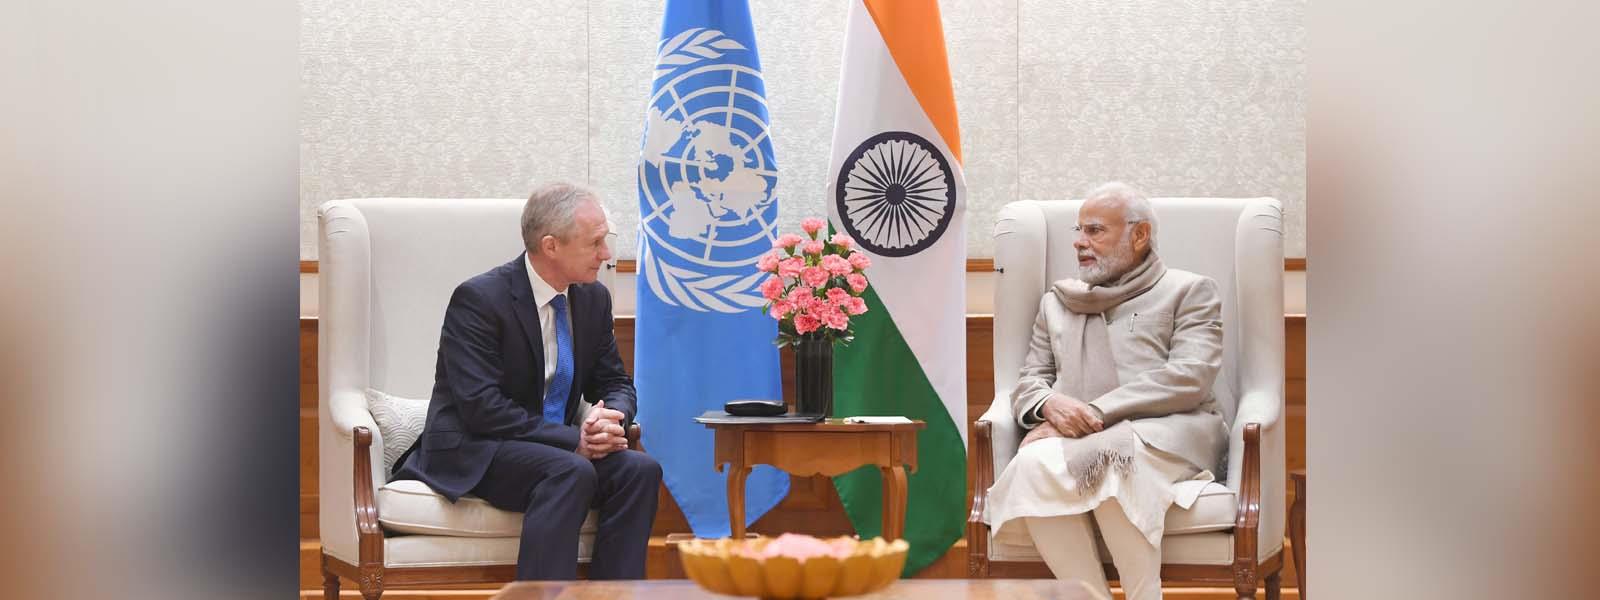 H.E. Mr. Csaba Kőrösi, President of the United Nations General Assembly called on Prime Minister Shri Narendra Modi in New Delhi